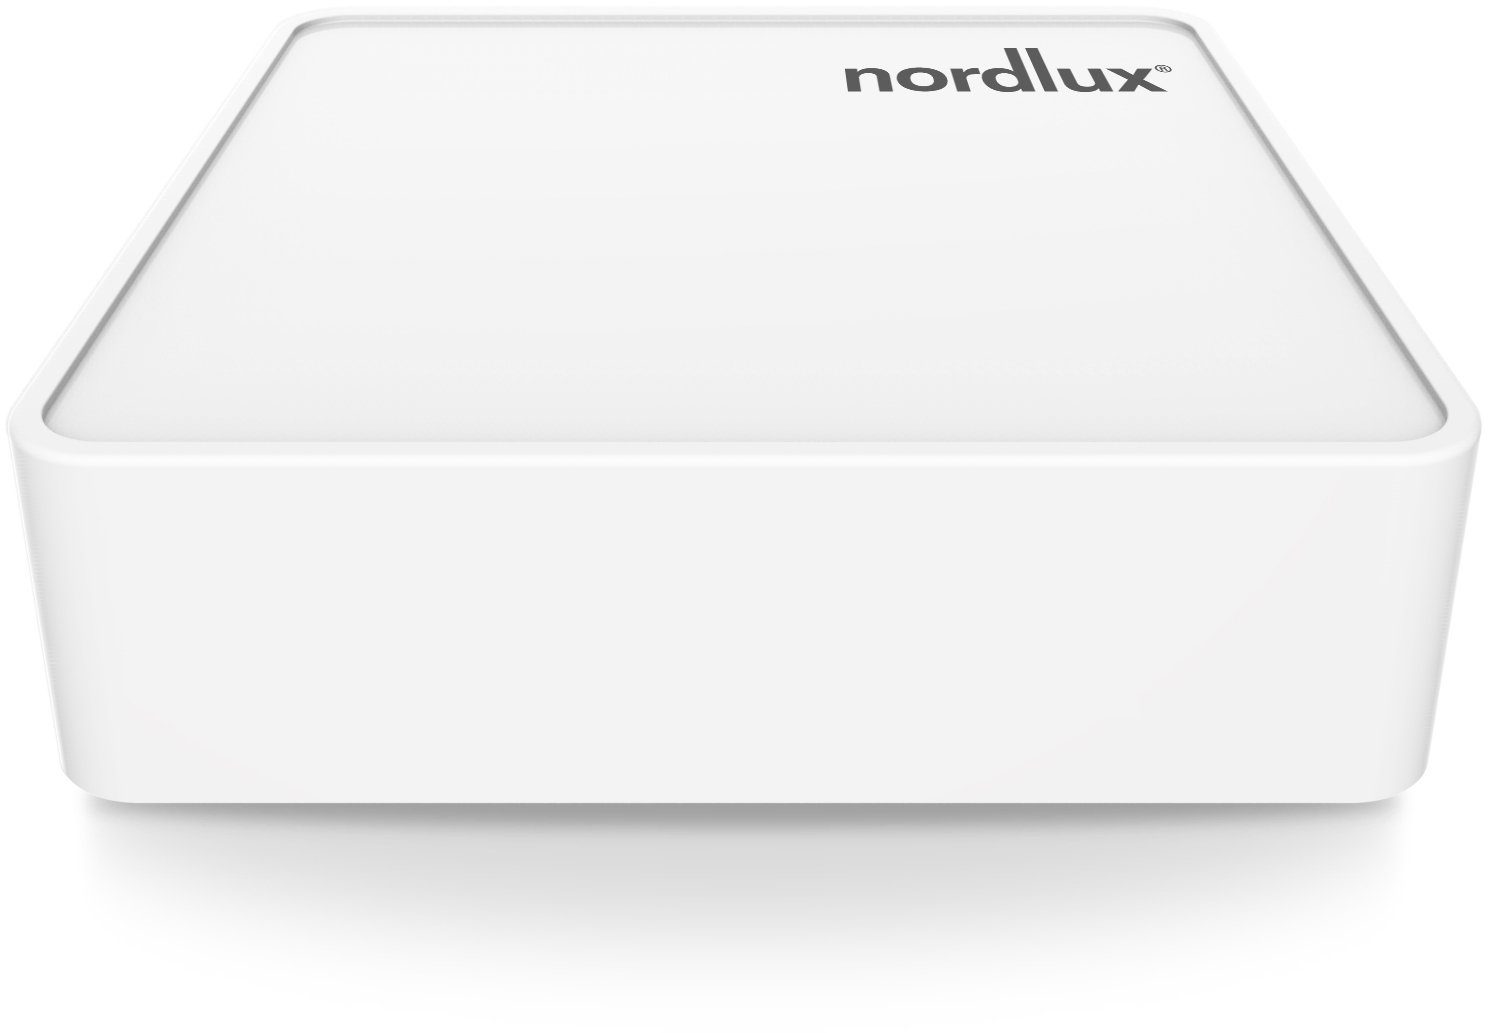 Nordlux Smartlight Bridge Smart-Home-Steuerelement, Smart Bridge, Wifi basiert Home